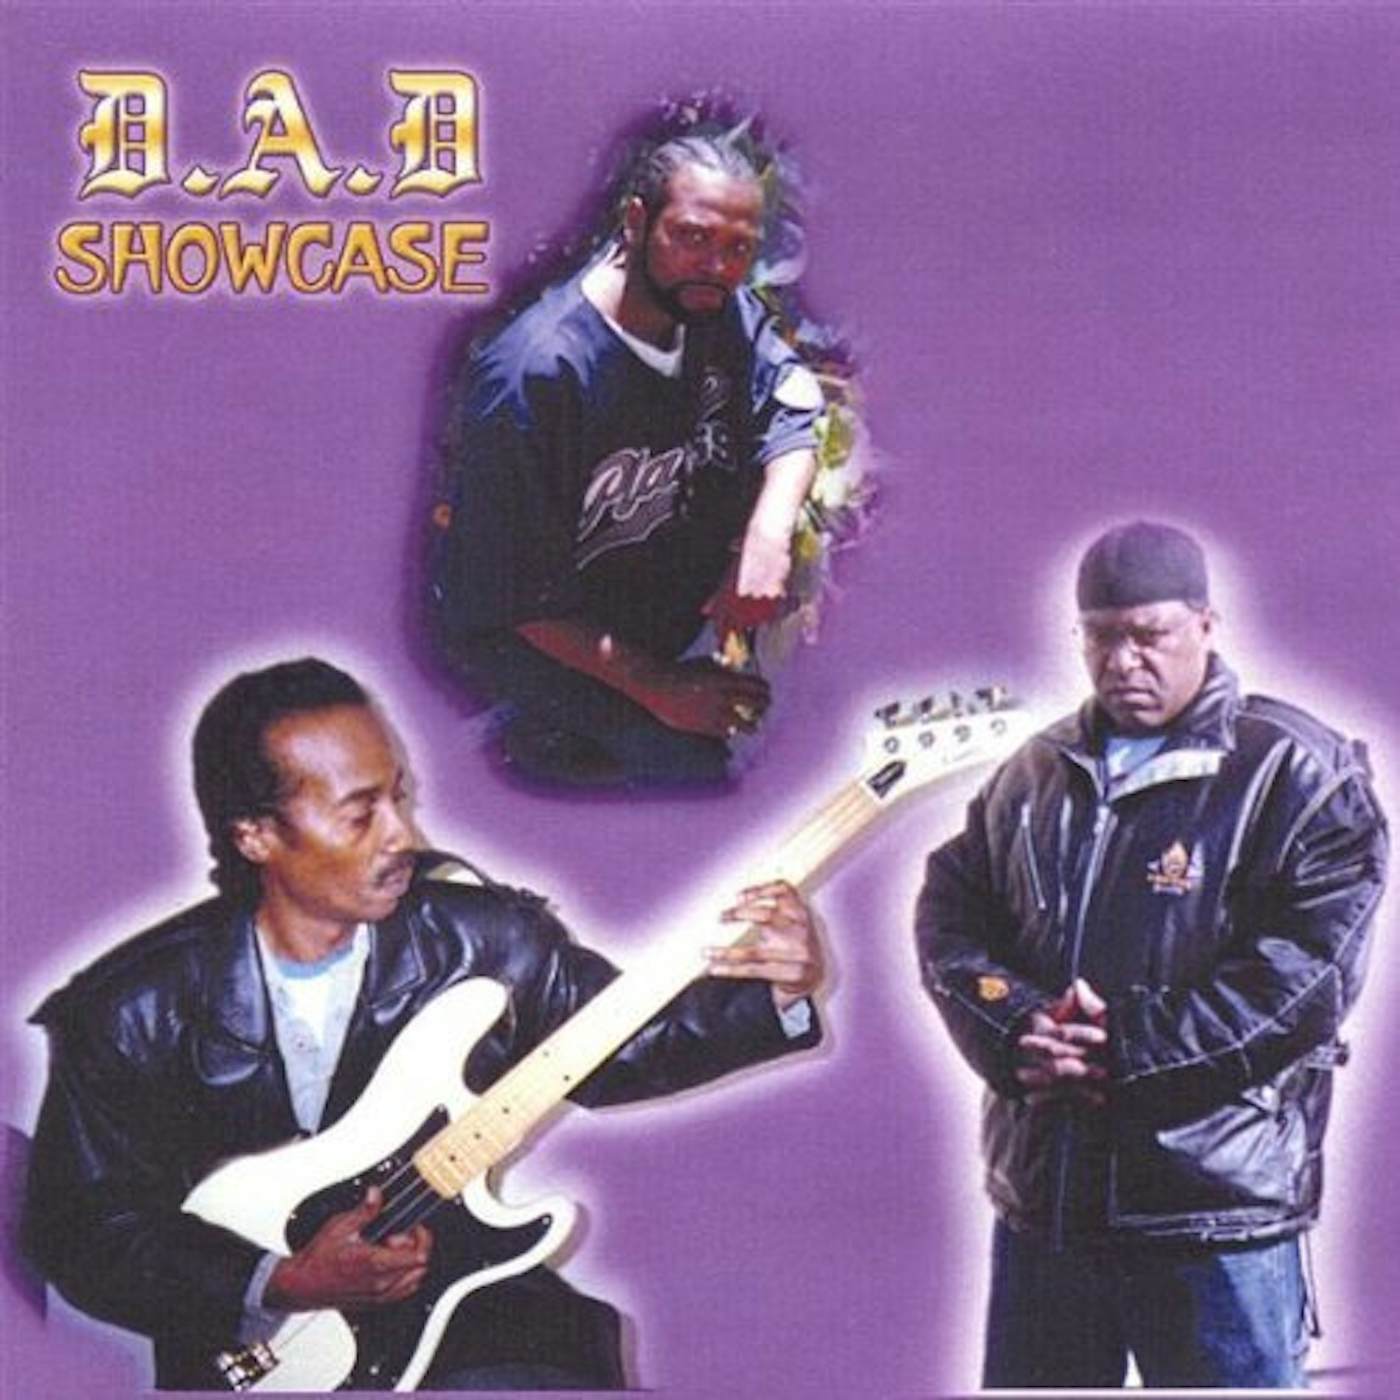 D.A.D. SHOWCASE CD